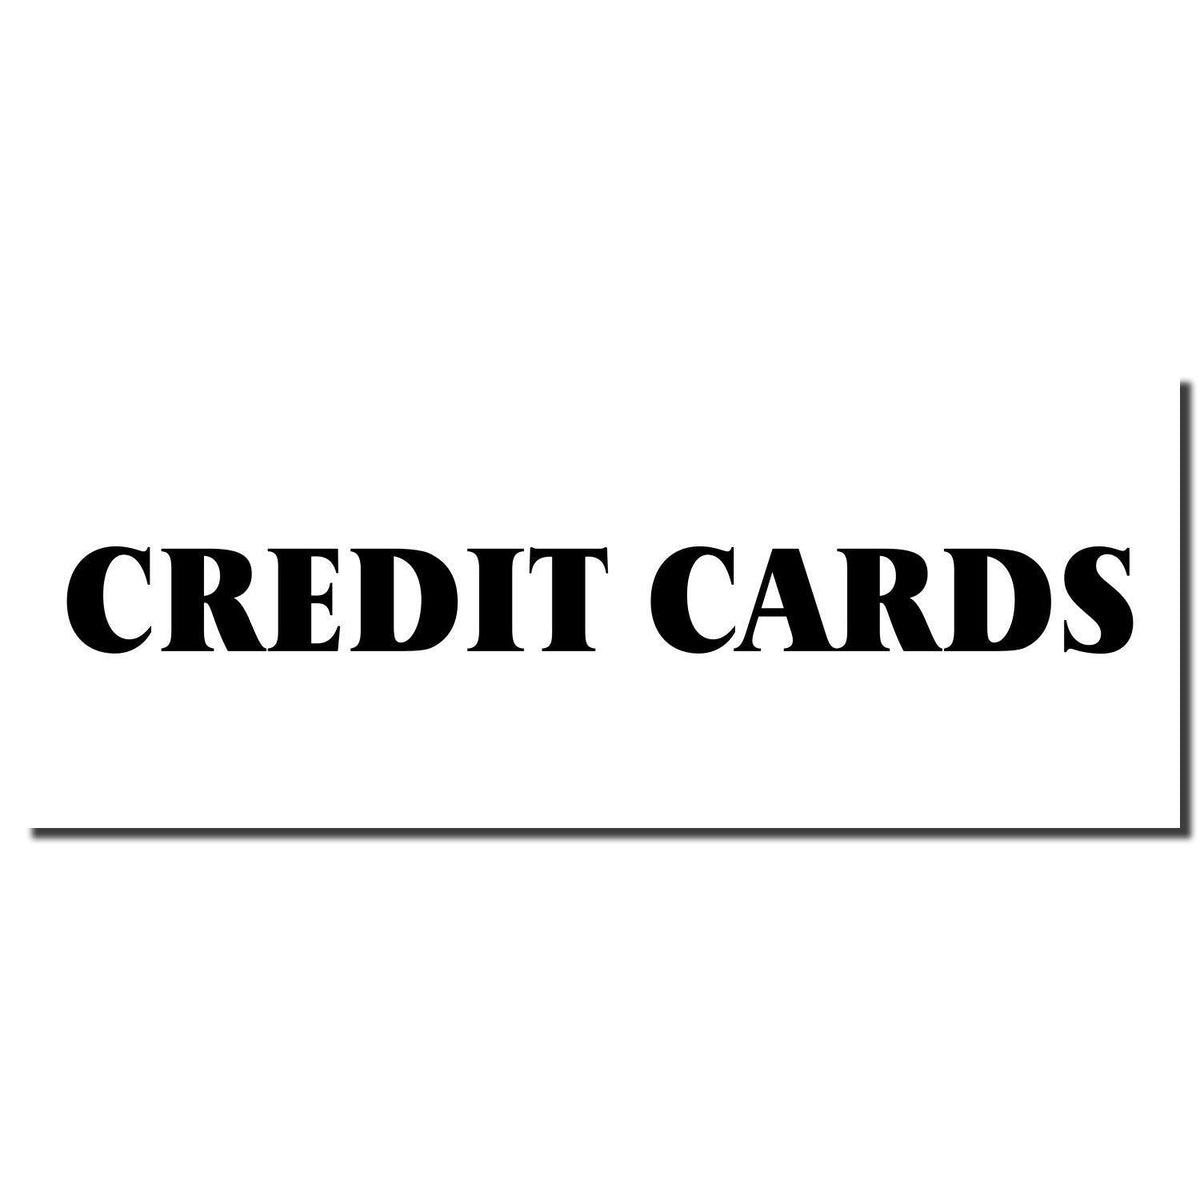 Enlarged Imprint Large Credit Cards Rubber Stamp Sample